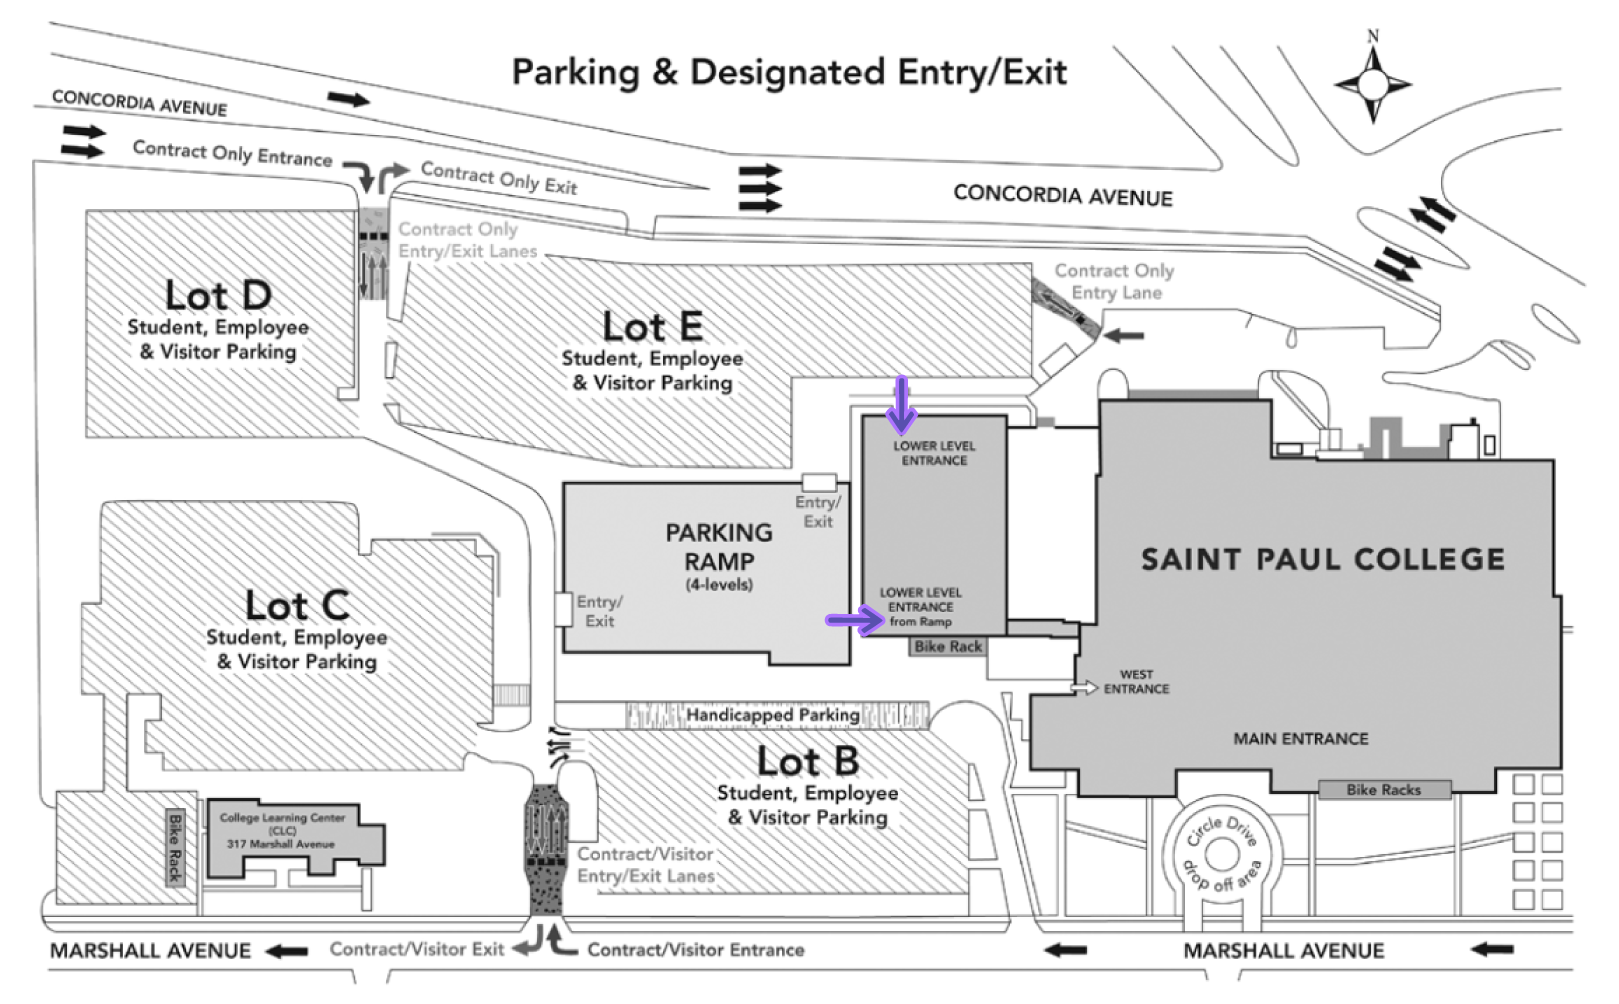 Saint Paul College Parking and Building Entrance